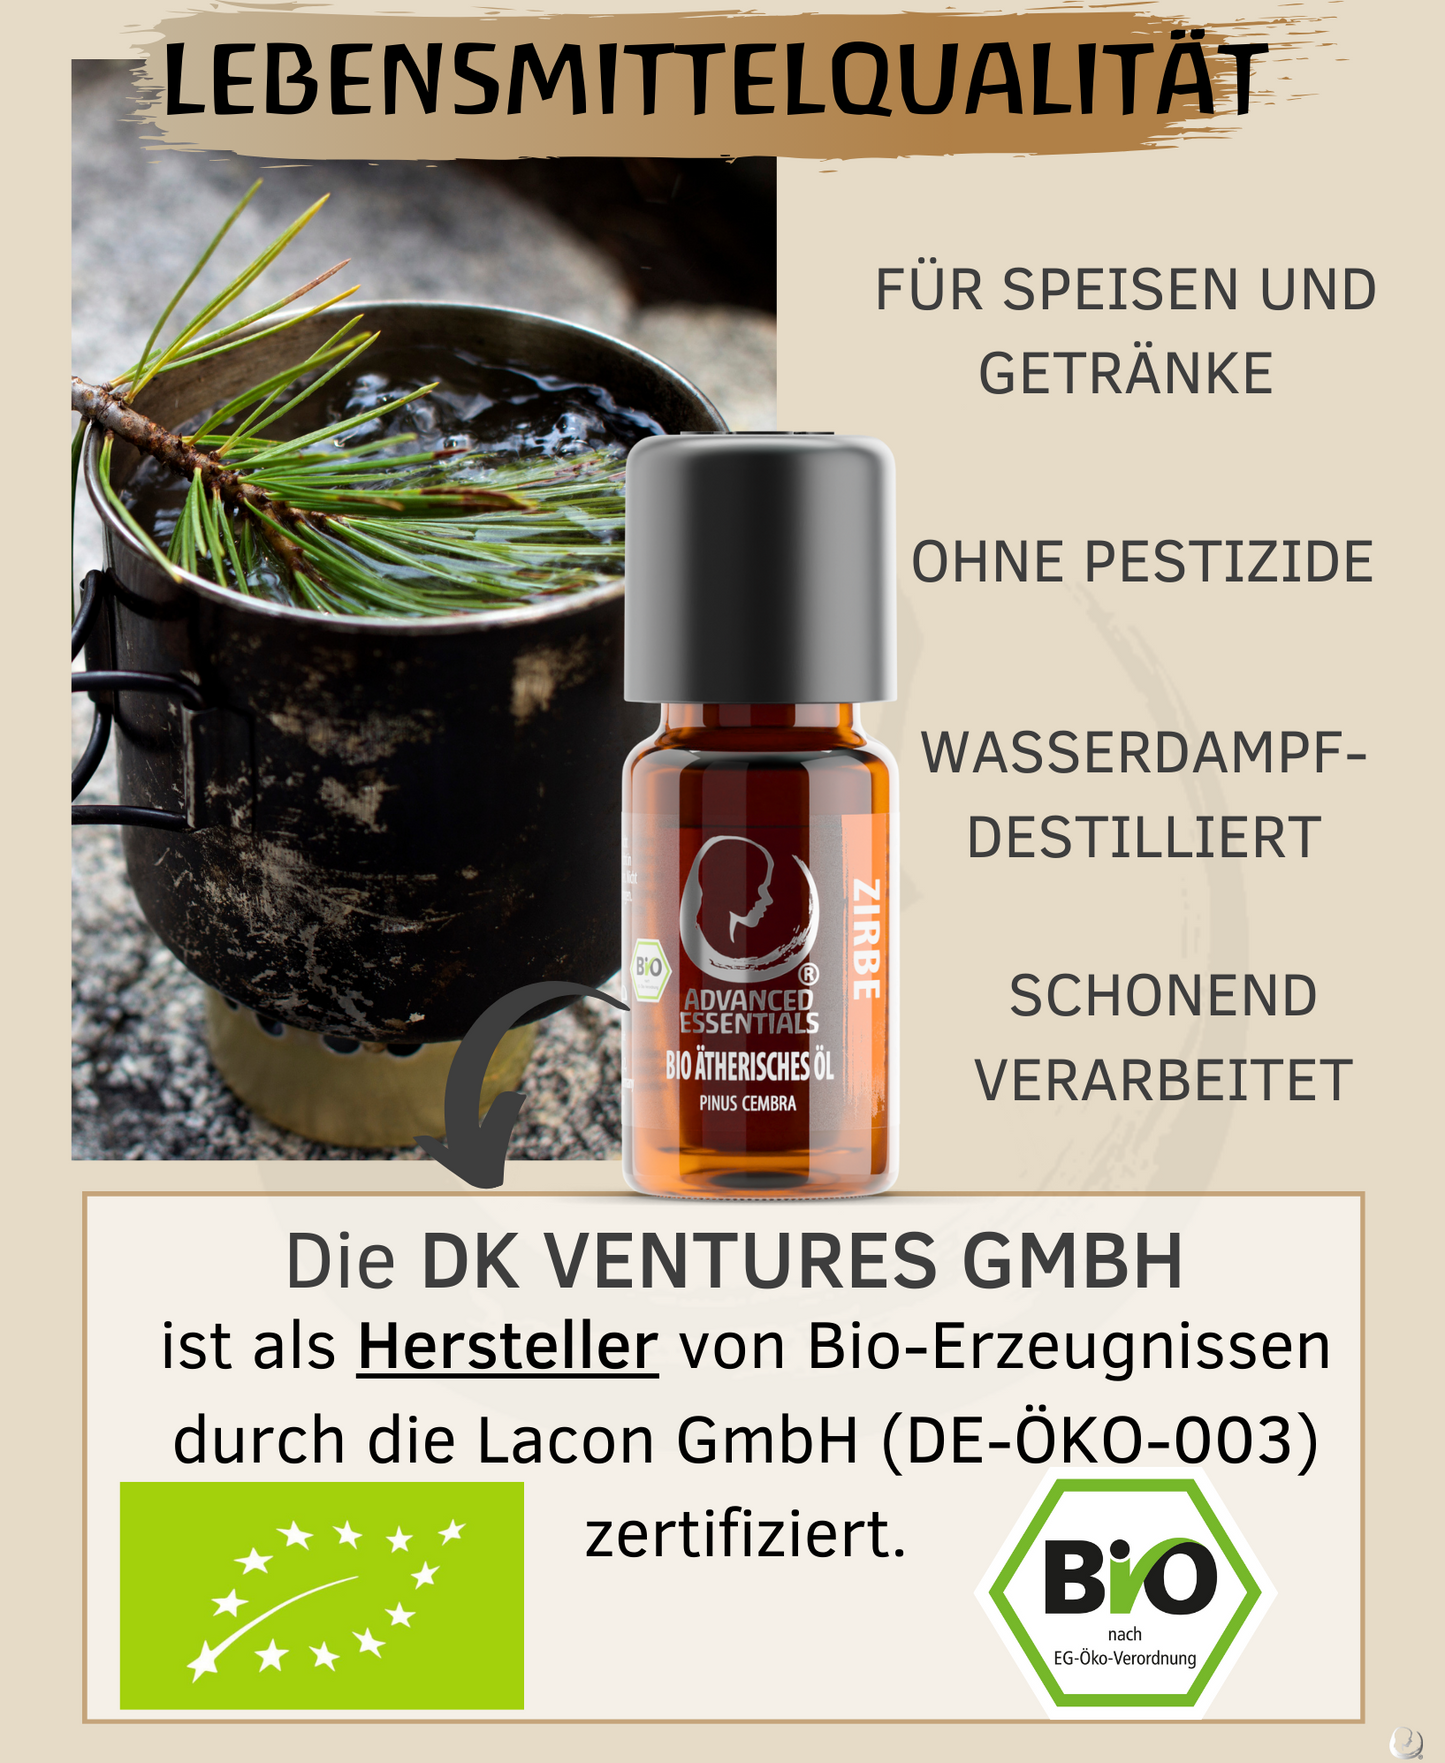 BIO Zirbenöl ätherisches Öl (Pinus cembra) Wildwuchs Zirbenöl bio aus Österreich (Zirbe, 10ml)